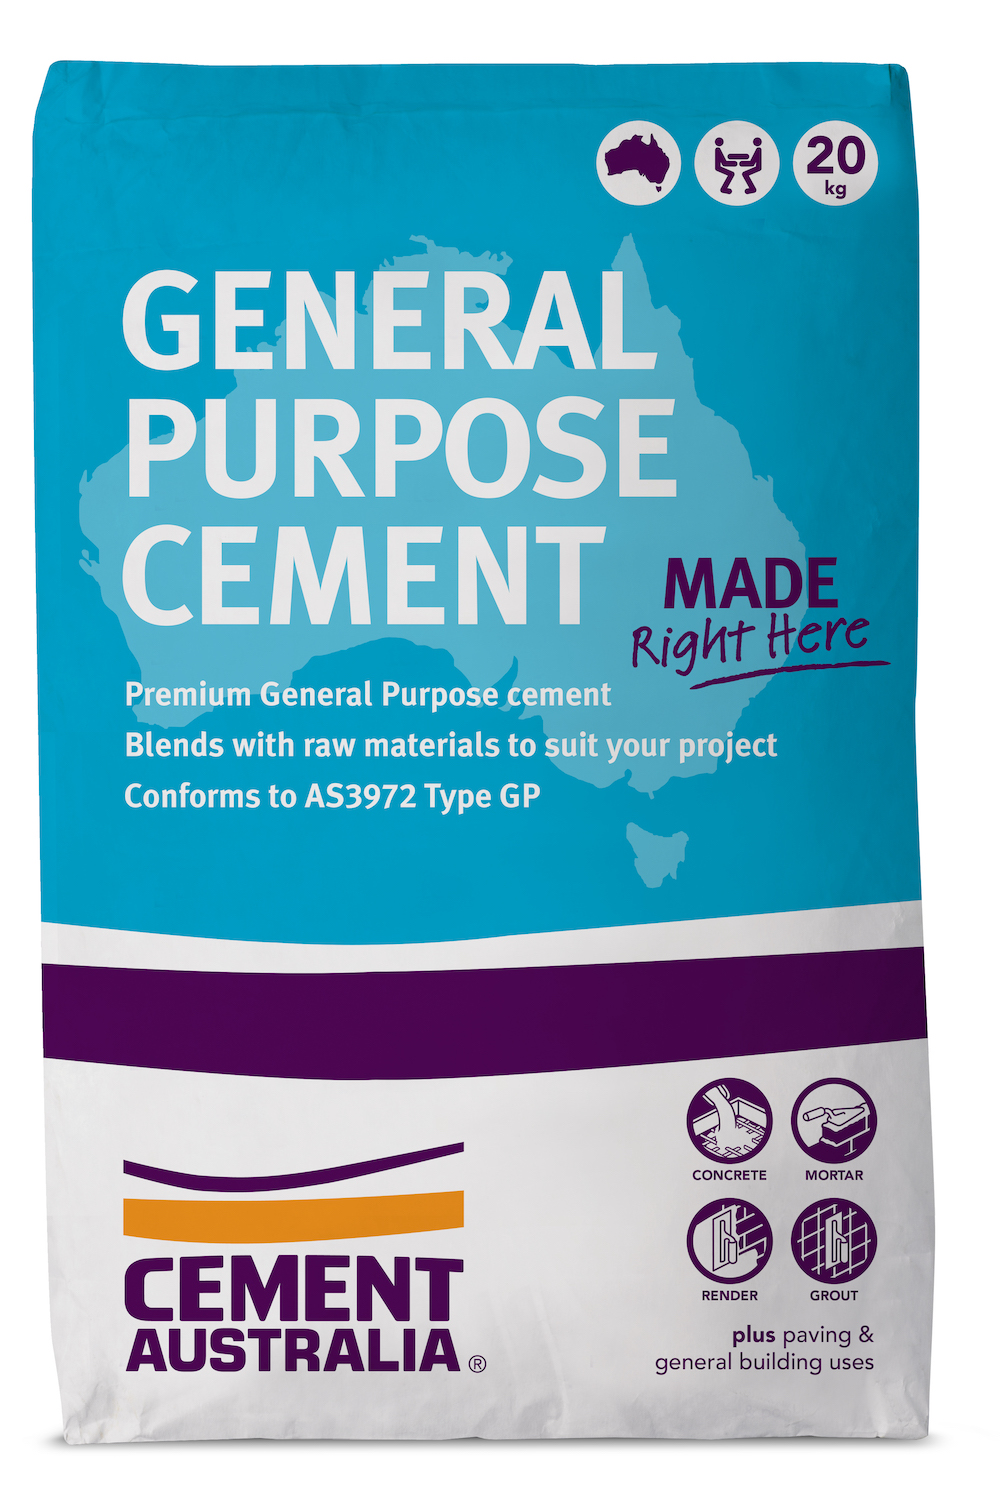 General Purpose Cement $8.45 per bag